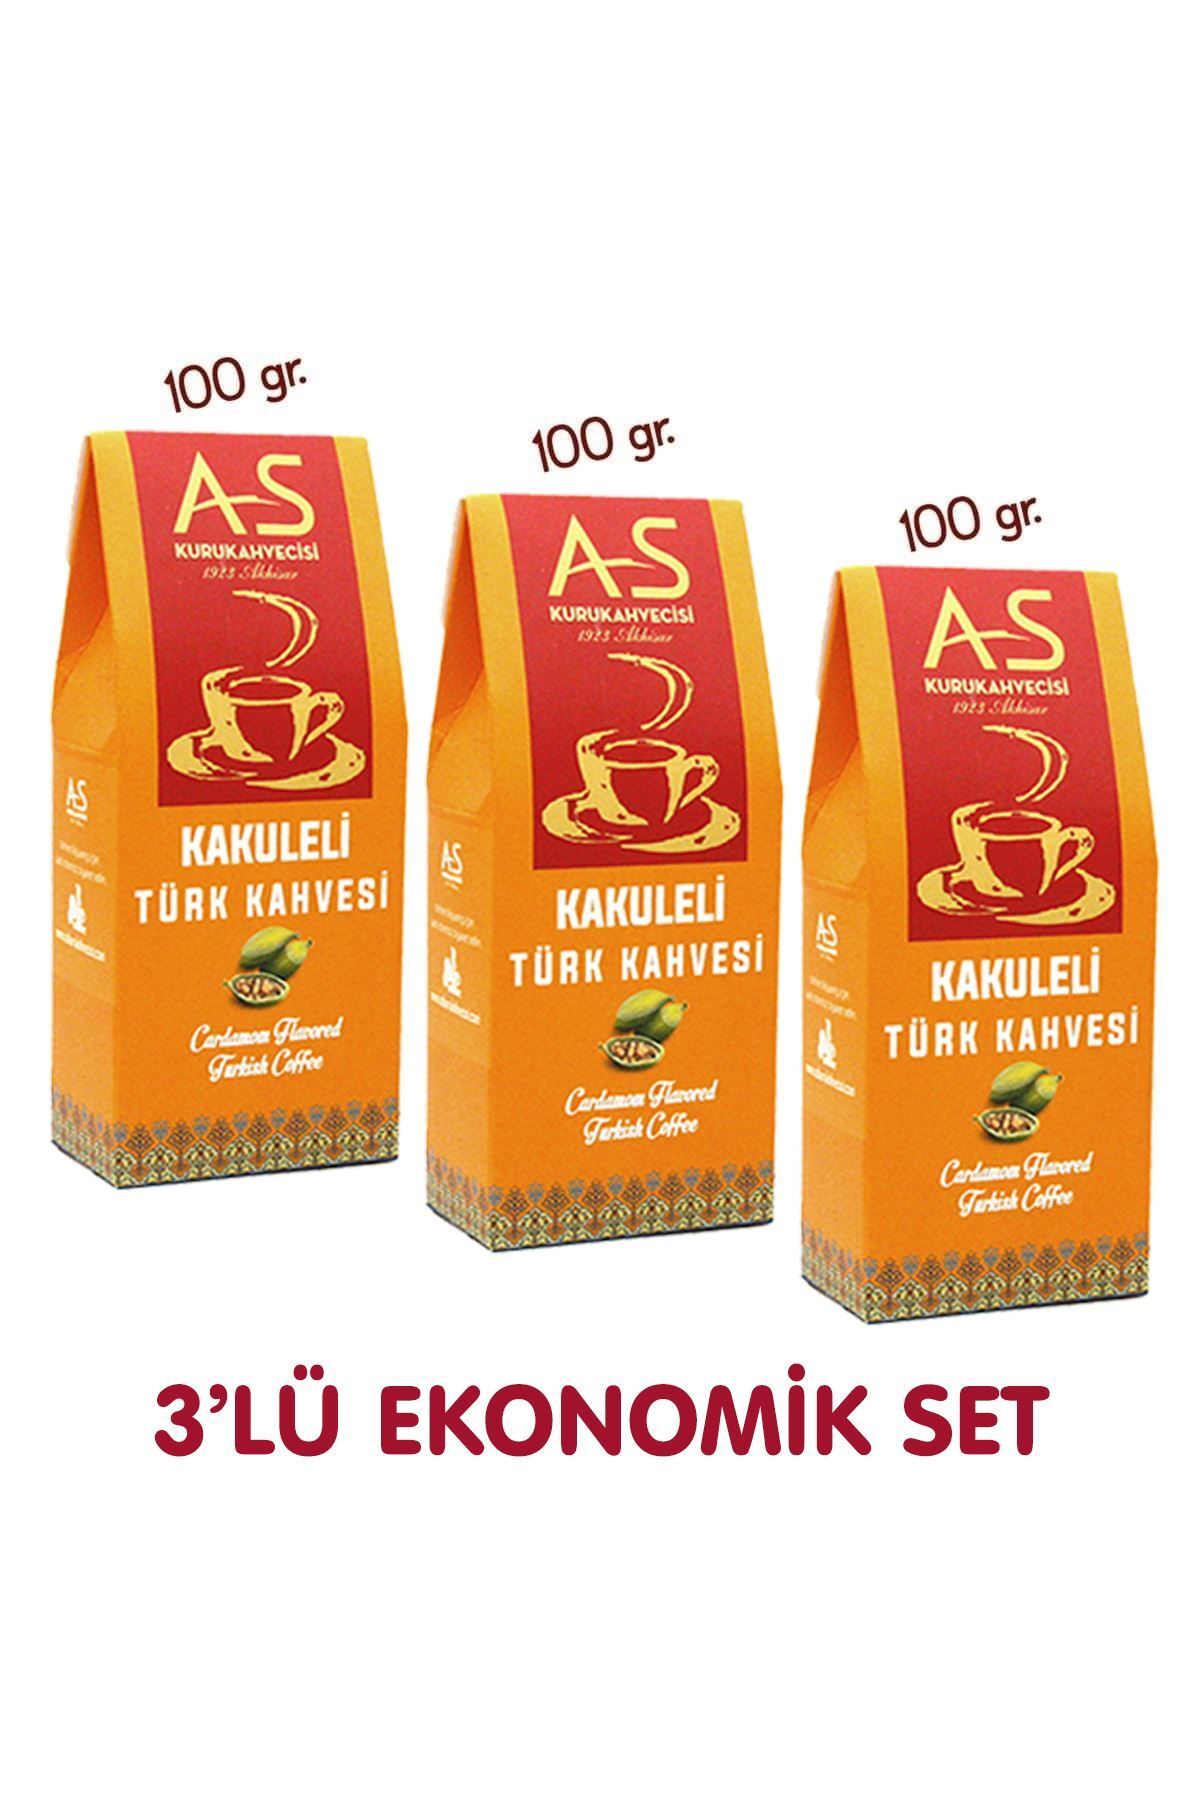 AS Kurukahvecisi 3'lü Kakuleli Türk Kahvesi Ekonomik Set